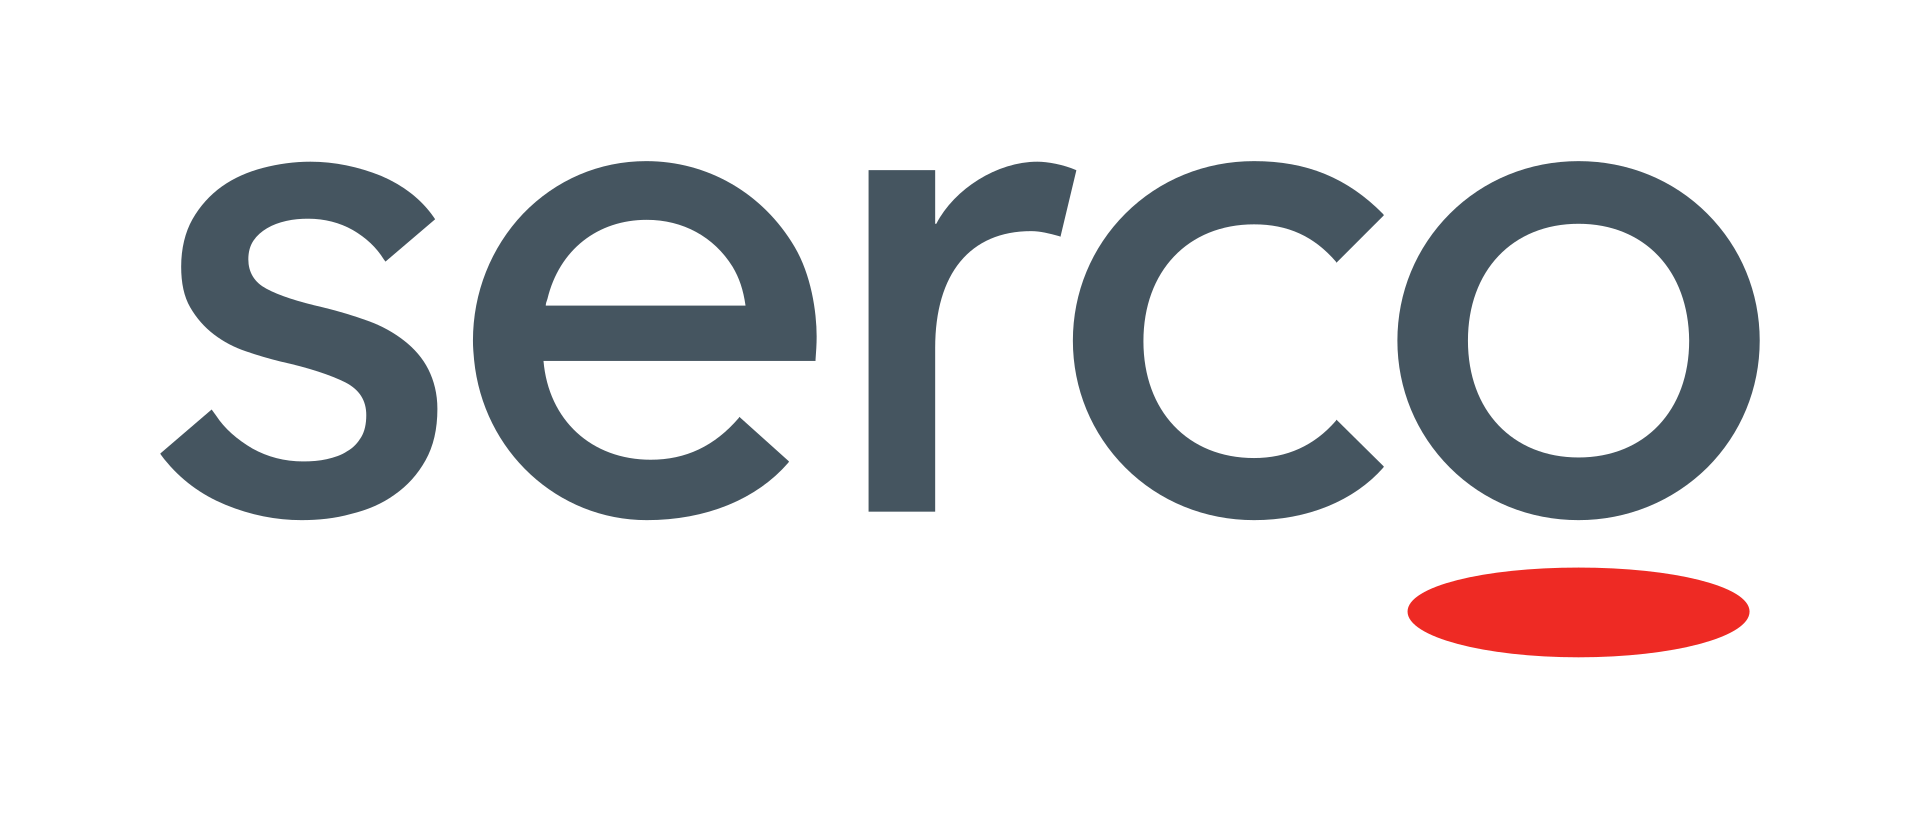 Serco Brand Logo